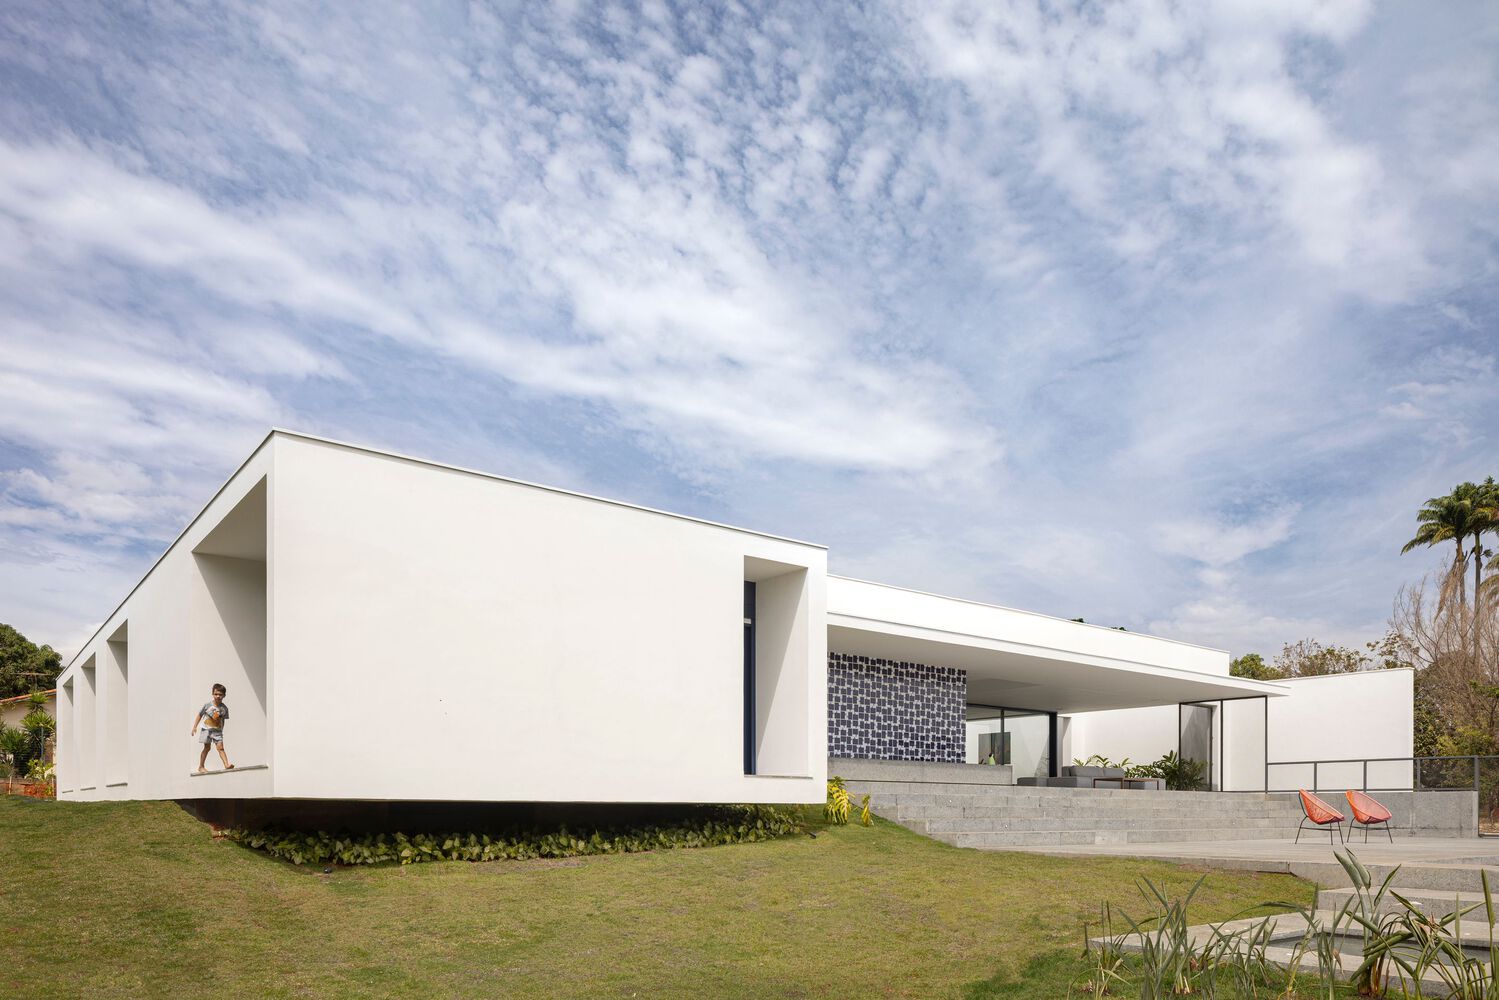 别墅设计,住宅设计案例,BLOCO Arquitetos,巴西,国外别墅设计案例,600㎡,景观别墅,画廊住宅